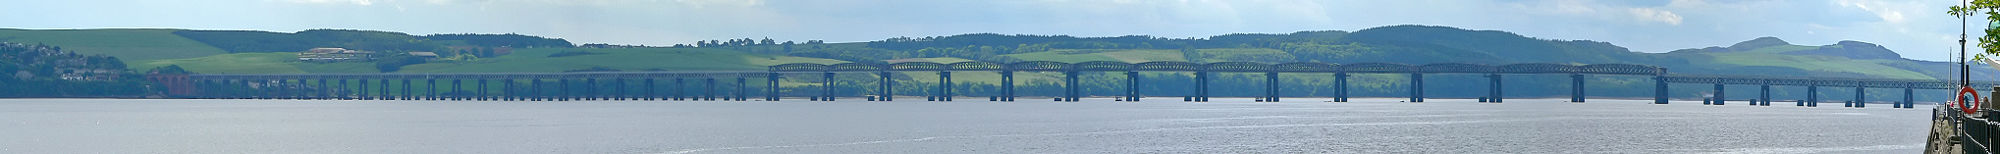 Die heutige Firth-of-Tay-Brücke. Neben den Pfeilern erkennt man die Fundamente der alten Brücke.